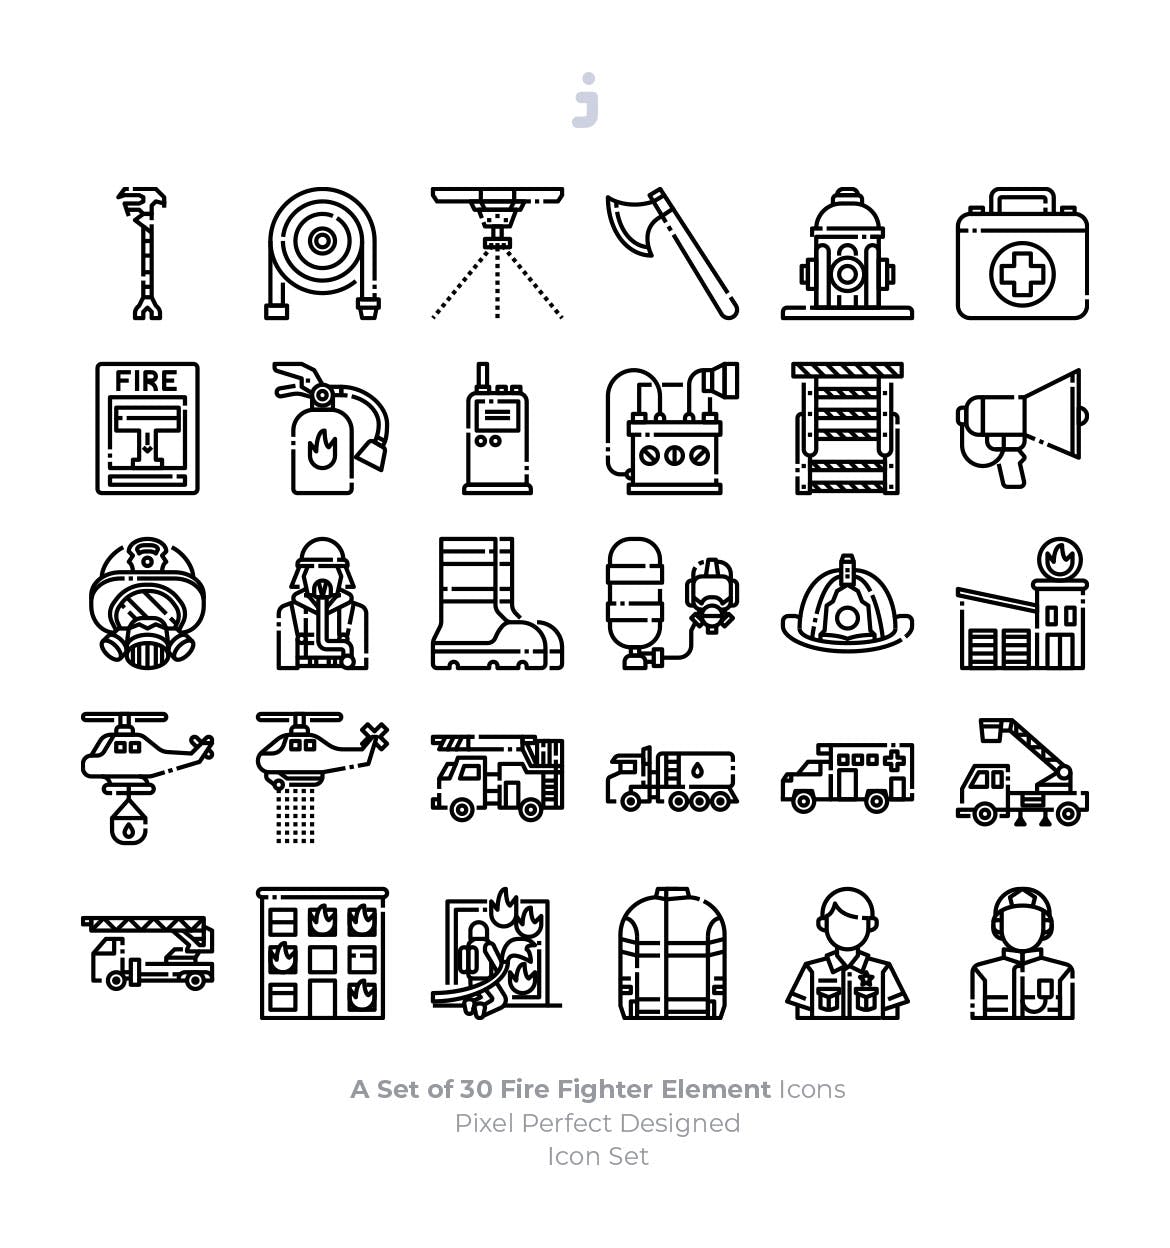 30枚消防员/消防主题矢量图标素材 30 Fire Fighter Icons插图(2)